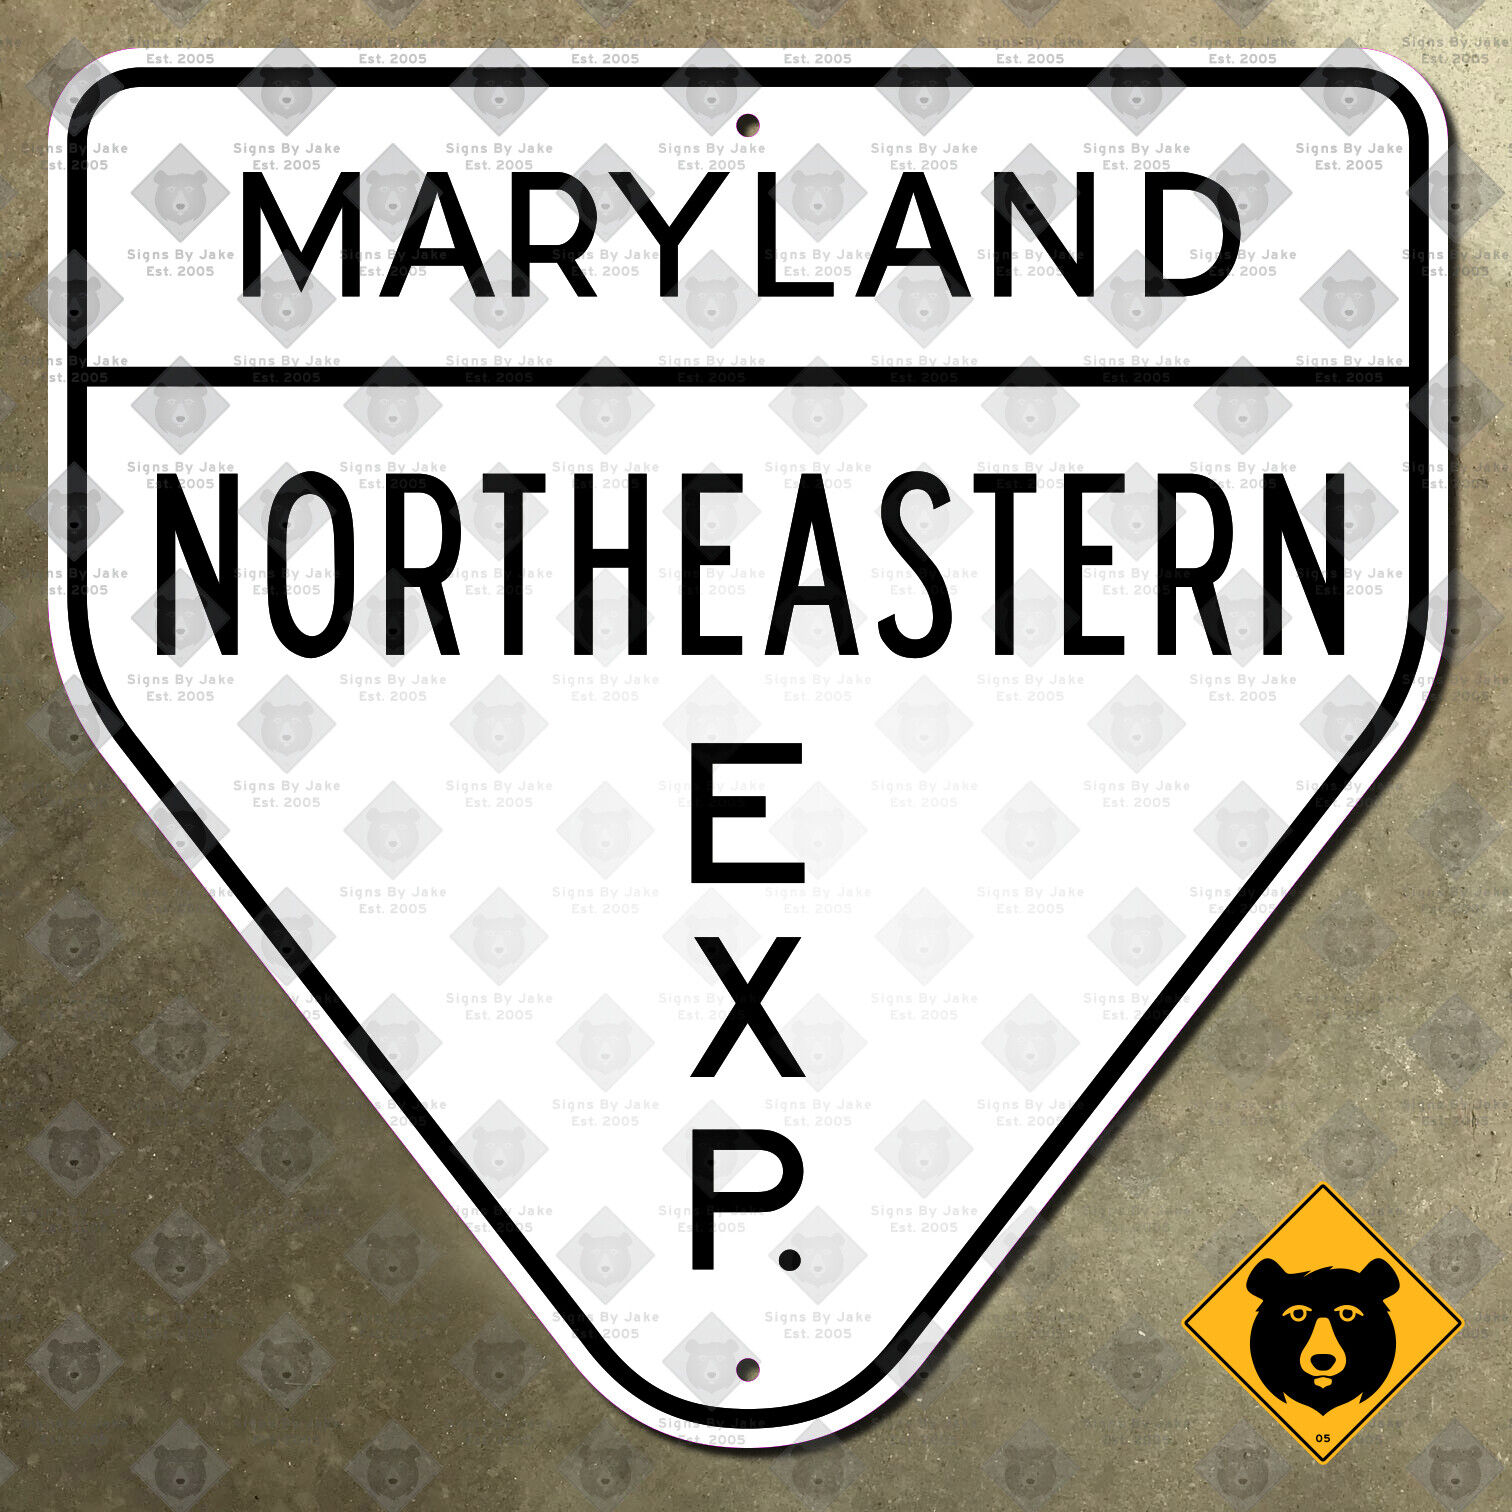 Maryland Northeastern Expressway highway marker 16x16